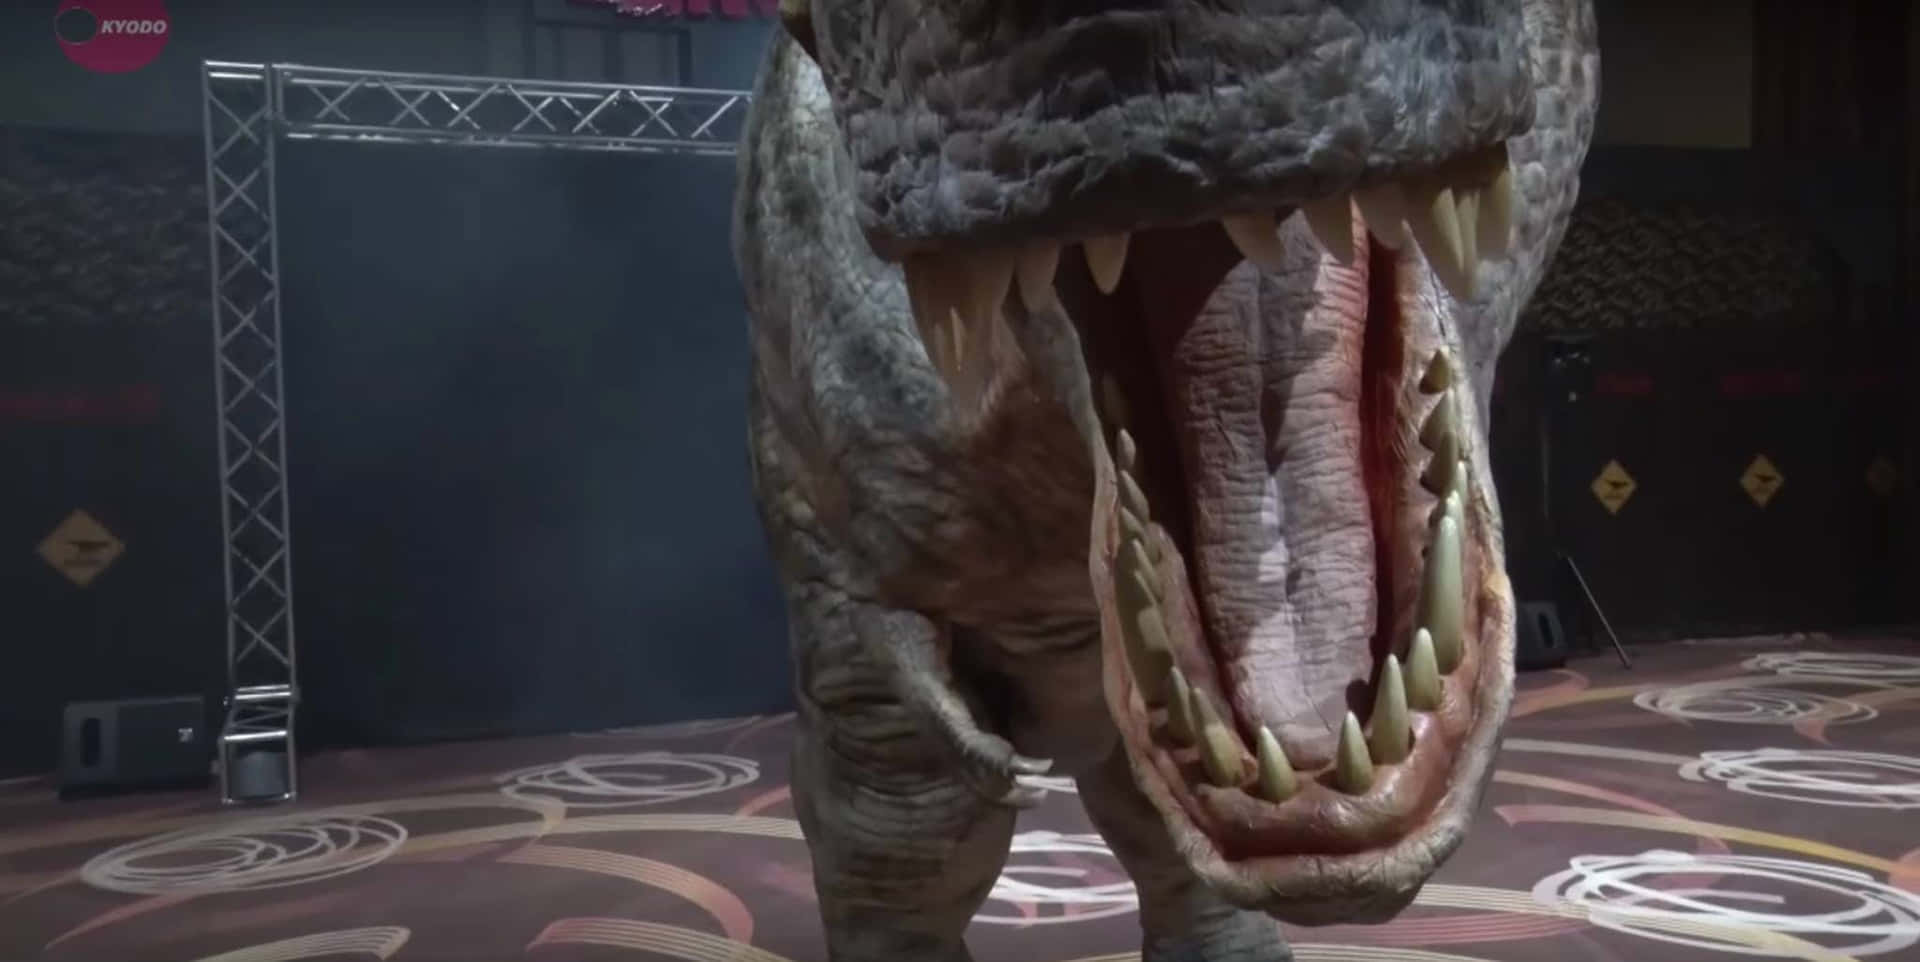 Eint-rex Mit Geöffnetem Mund In Einem Raum.